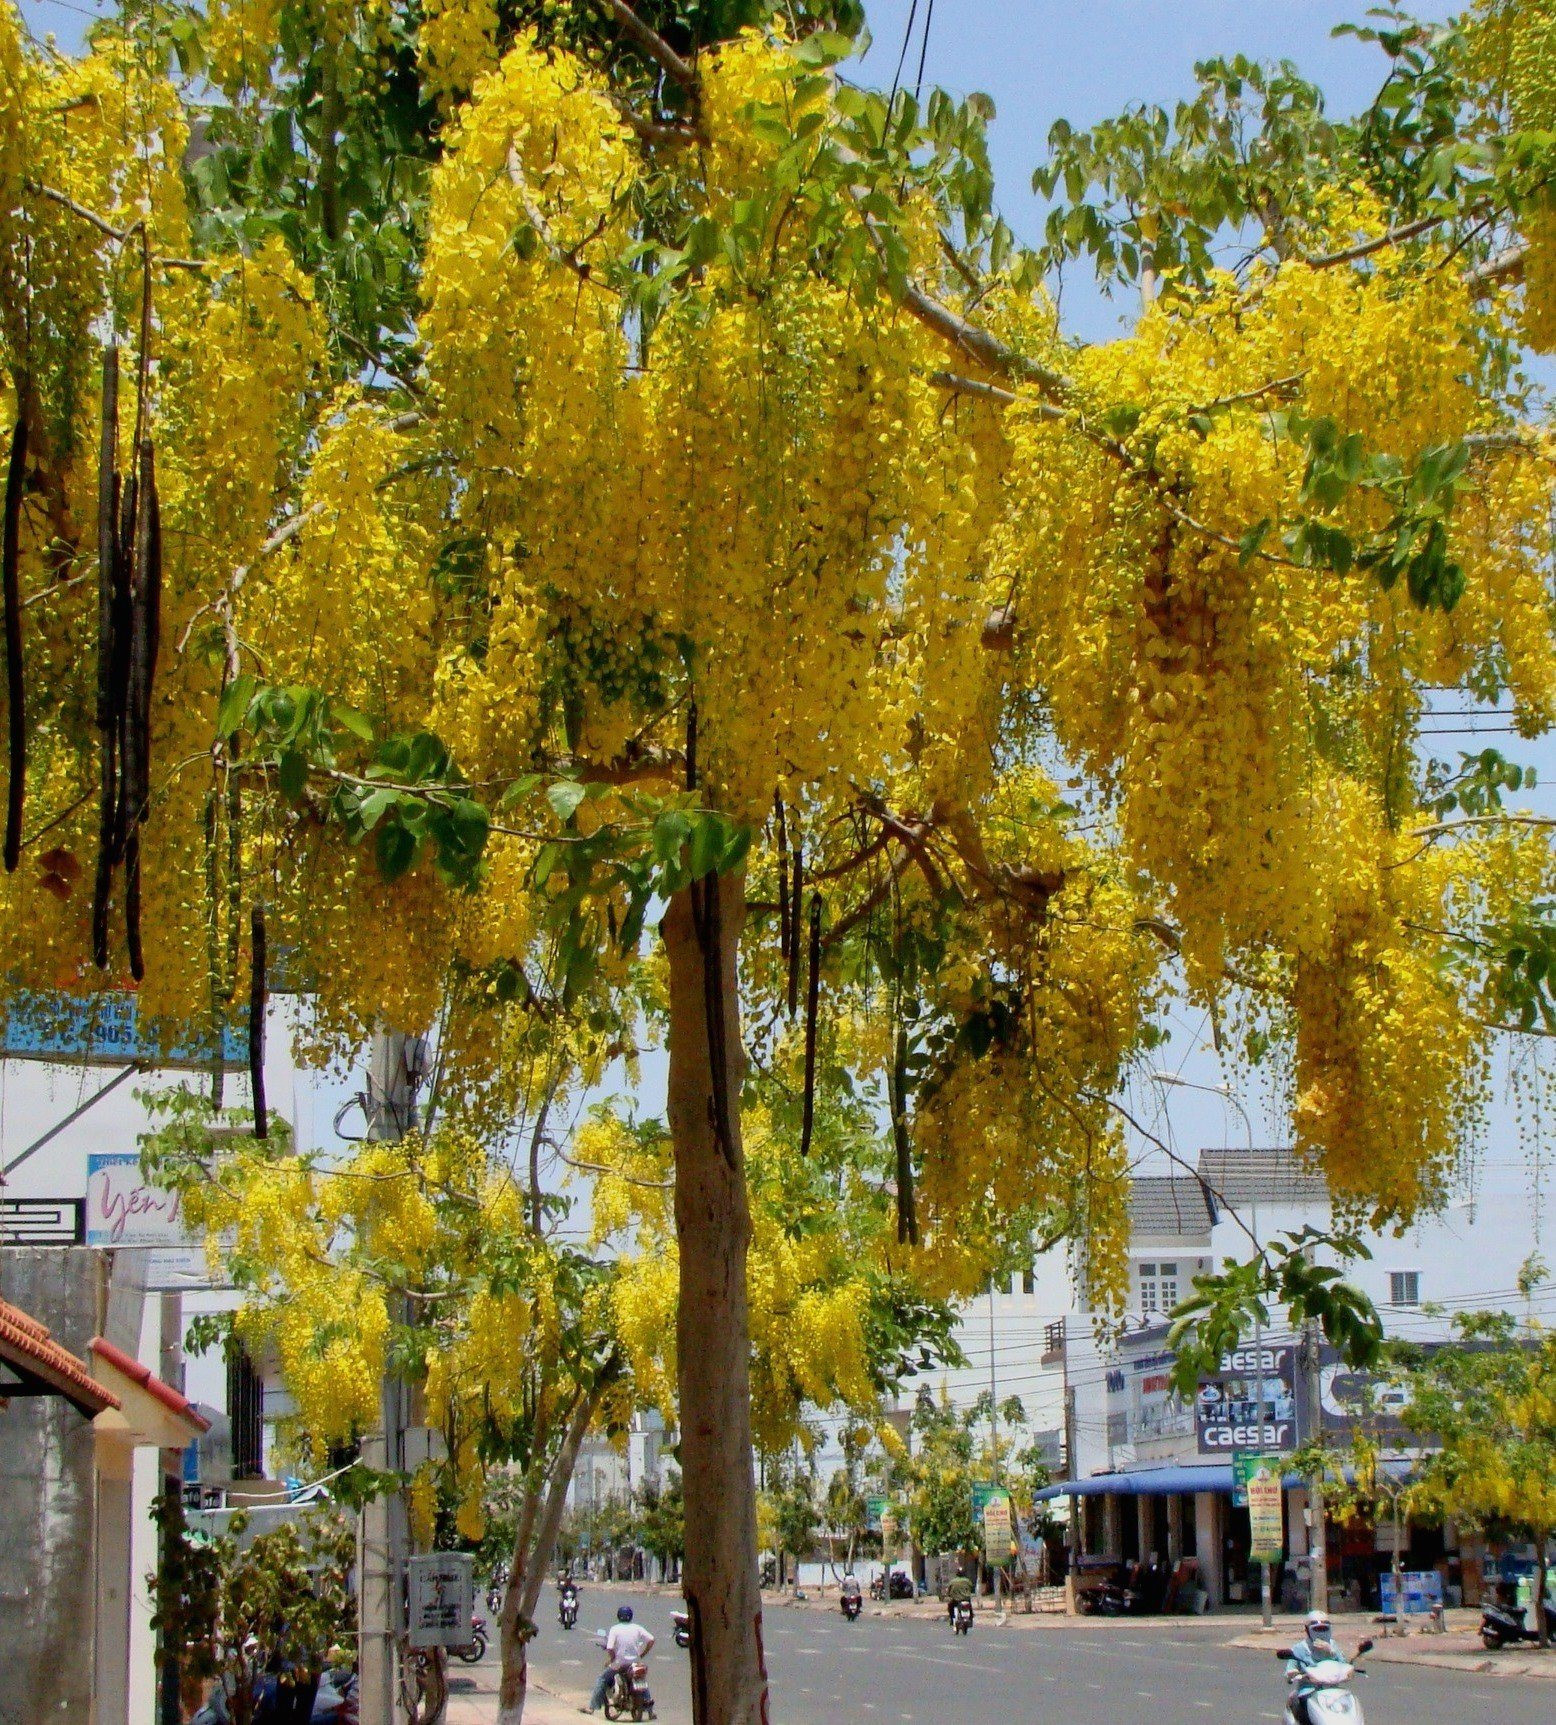 Ven đường phố ở Phan Thiết của Bình Thuận có một thứ cây tên lạ treo rủ hoa vàng, ai cũng ngắm nhìn đắm say - Ảnh 1.